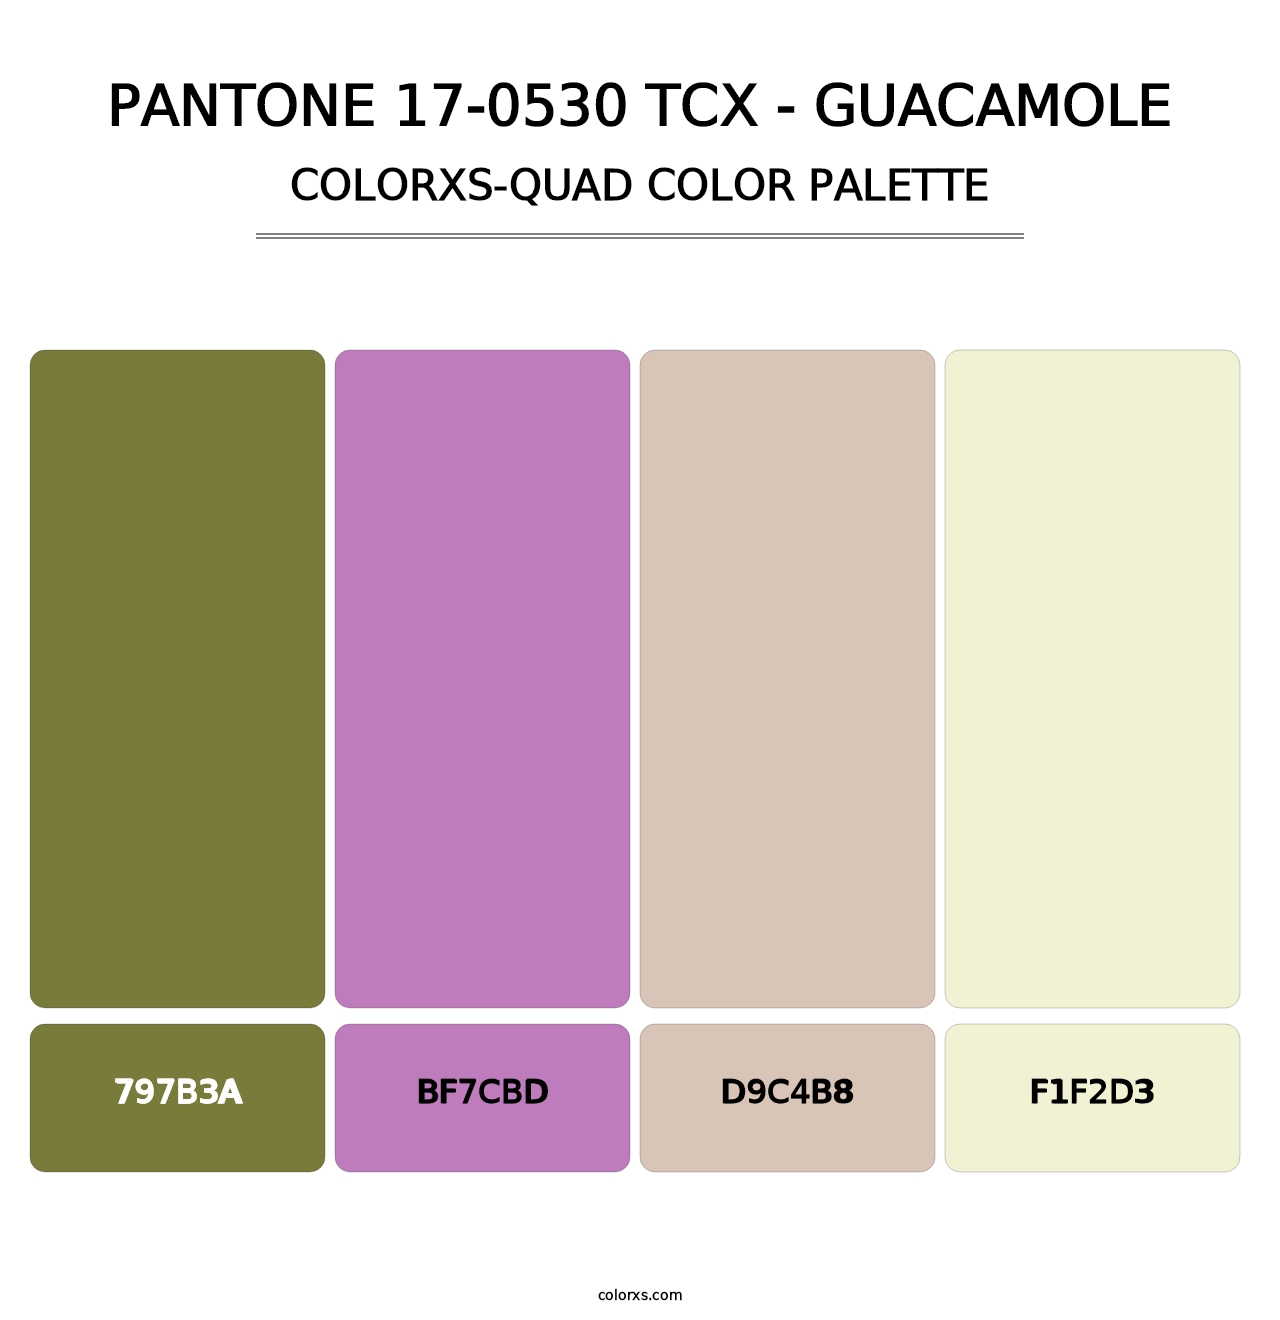 PANTONE 17-0530 TCX - Guacamole - Colorxs Quad Palette